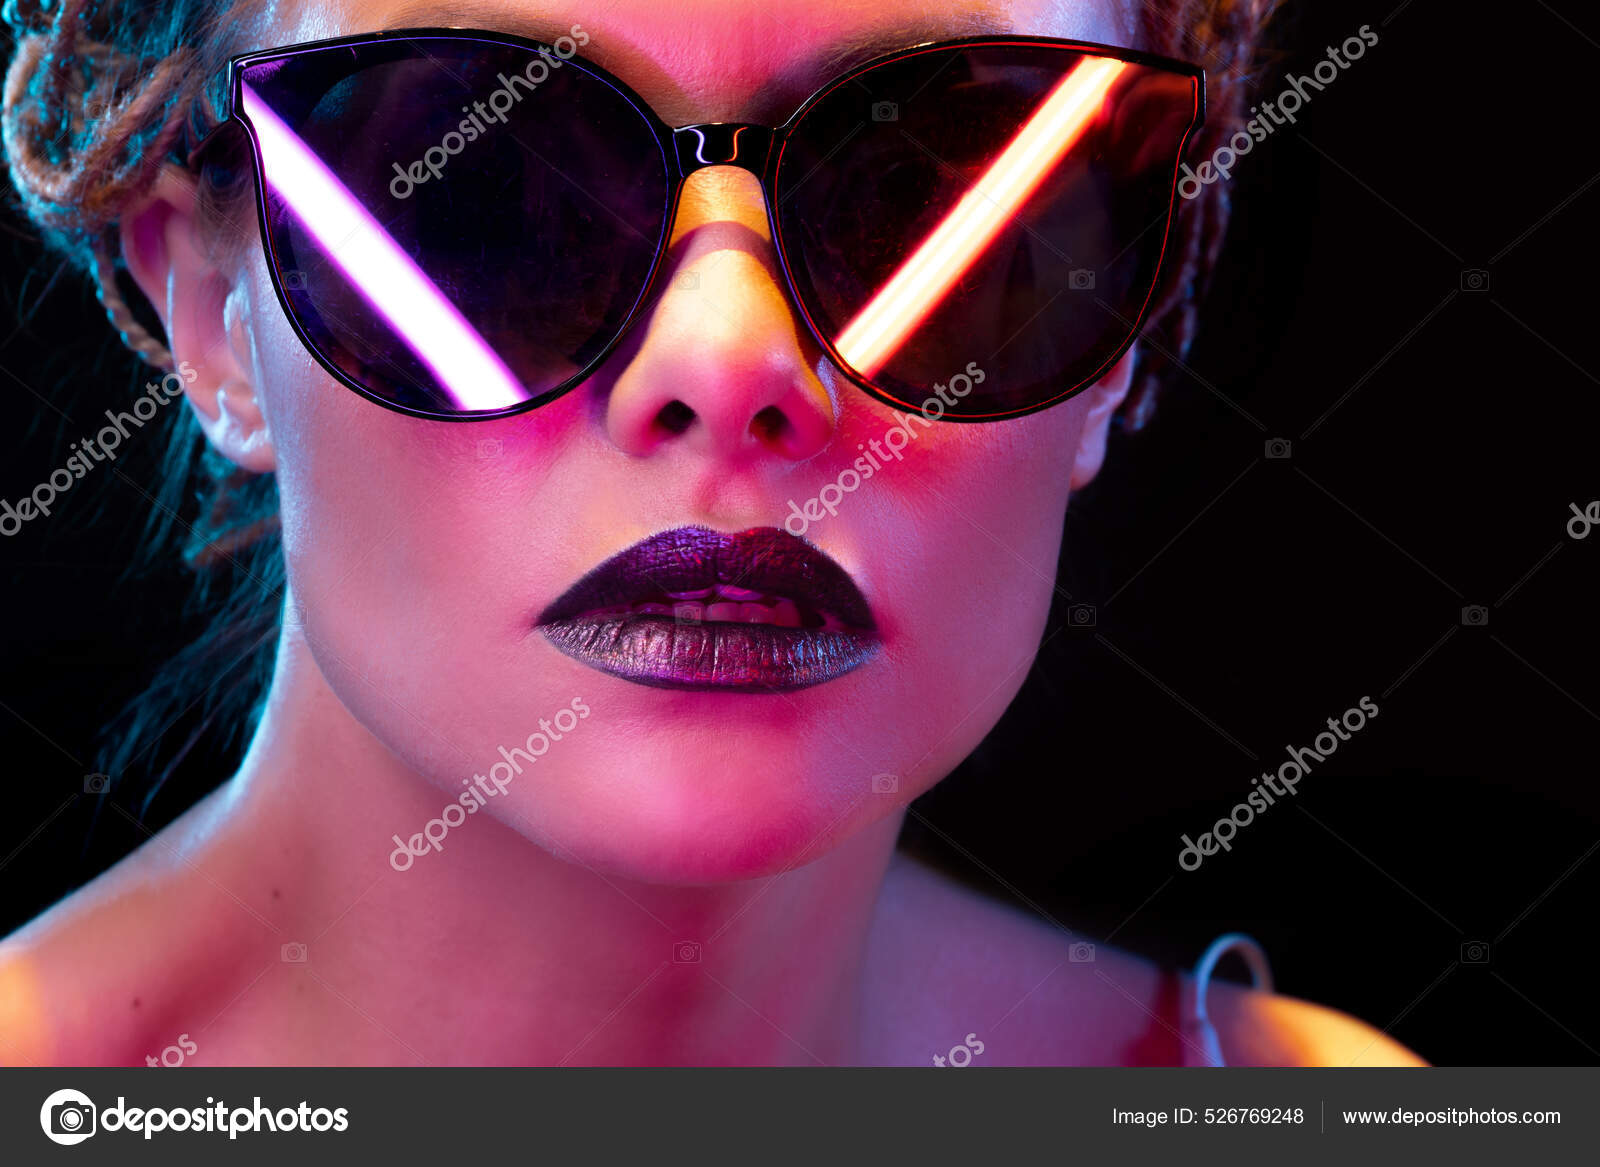 Estilo neón, reflejo de lámparas de neón en gafas oscuras de una mujer  joven y elegante,: fotografía de stock © KrisCole #526769248